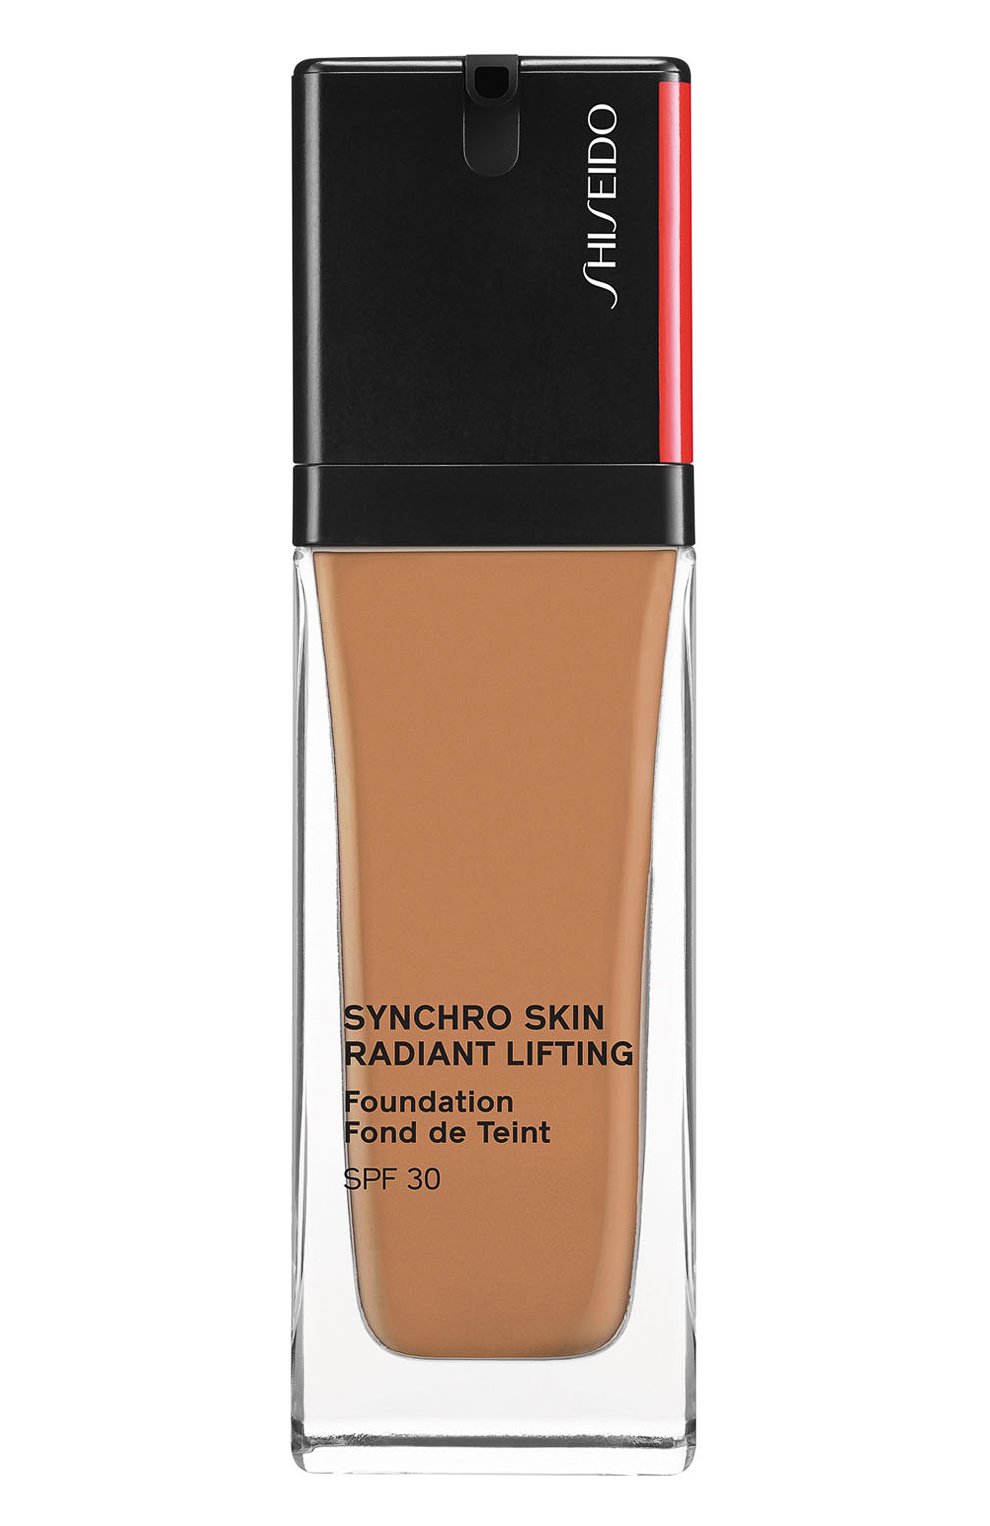 Shiseido synchro skin radiant lifting. Шисейдо тональный крем с эффектом сияния. Shiseido. Radiant Lifting Foundation тон 240. Shiseido Synchro Skin Radiant Lifting Foundation цвета. Палитра Shiseido Synchro Skin Radiant Lifting Foundation SPF 30.